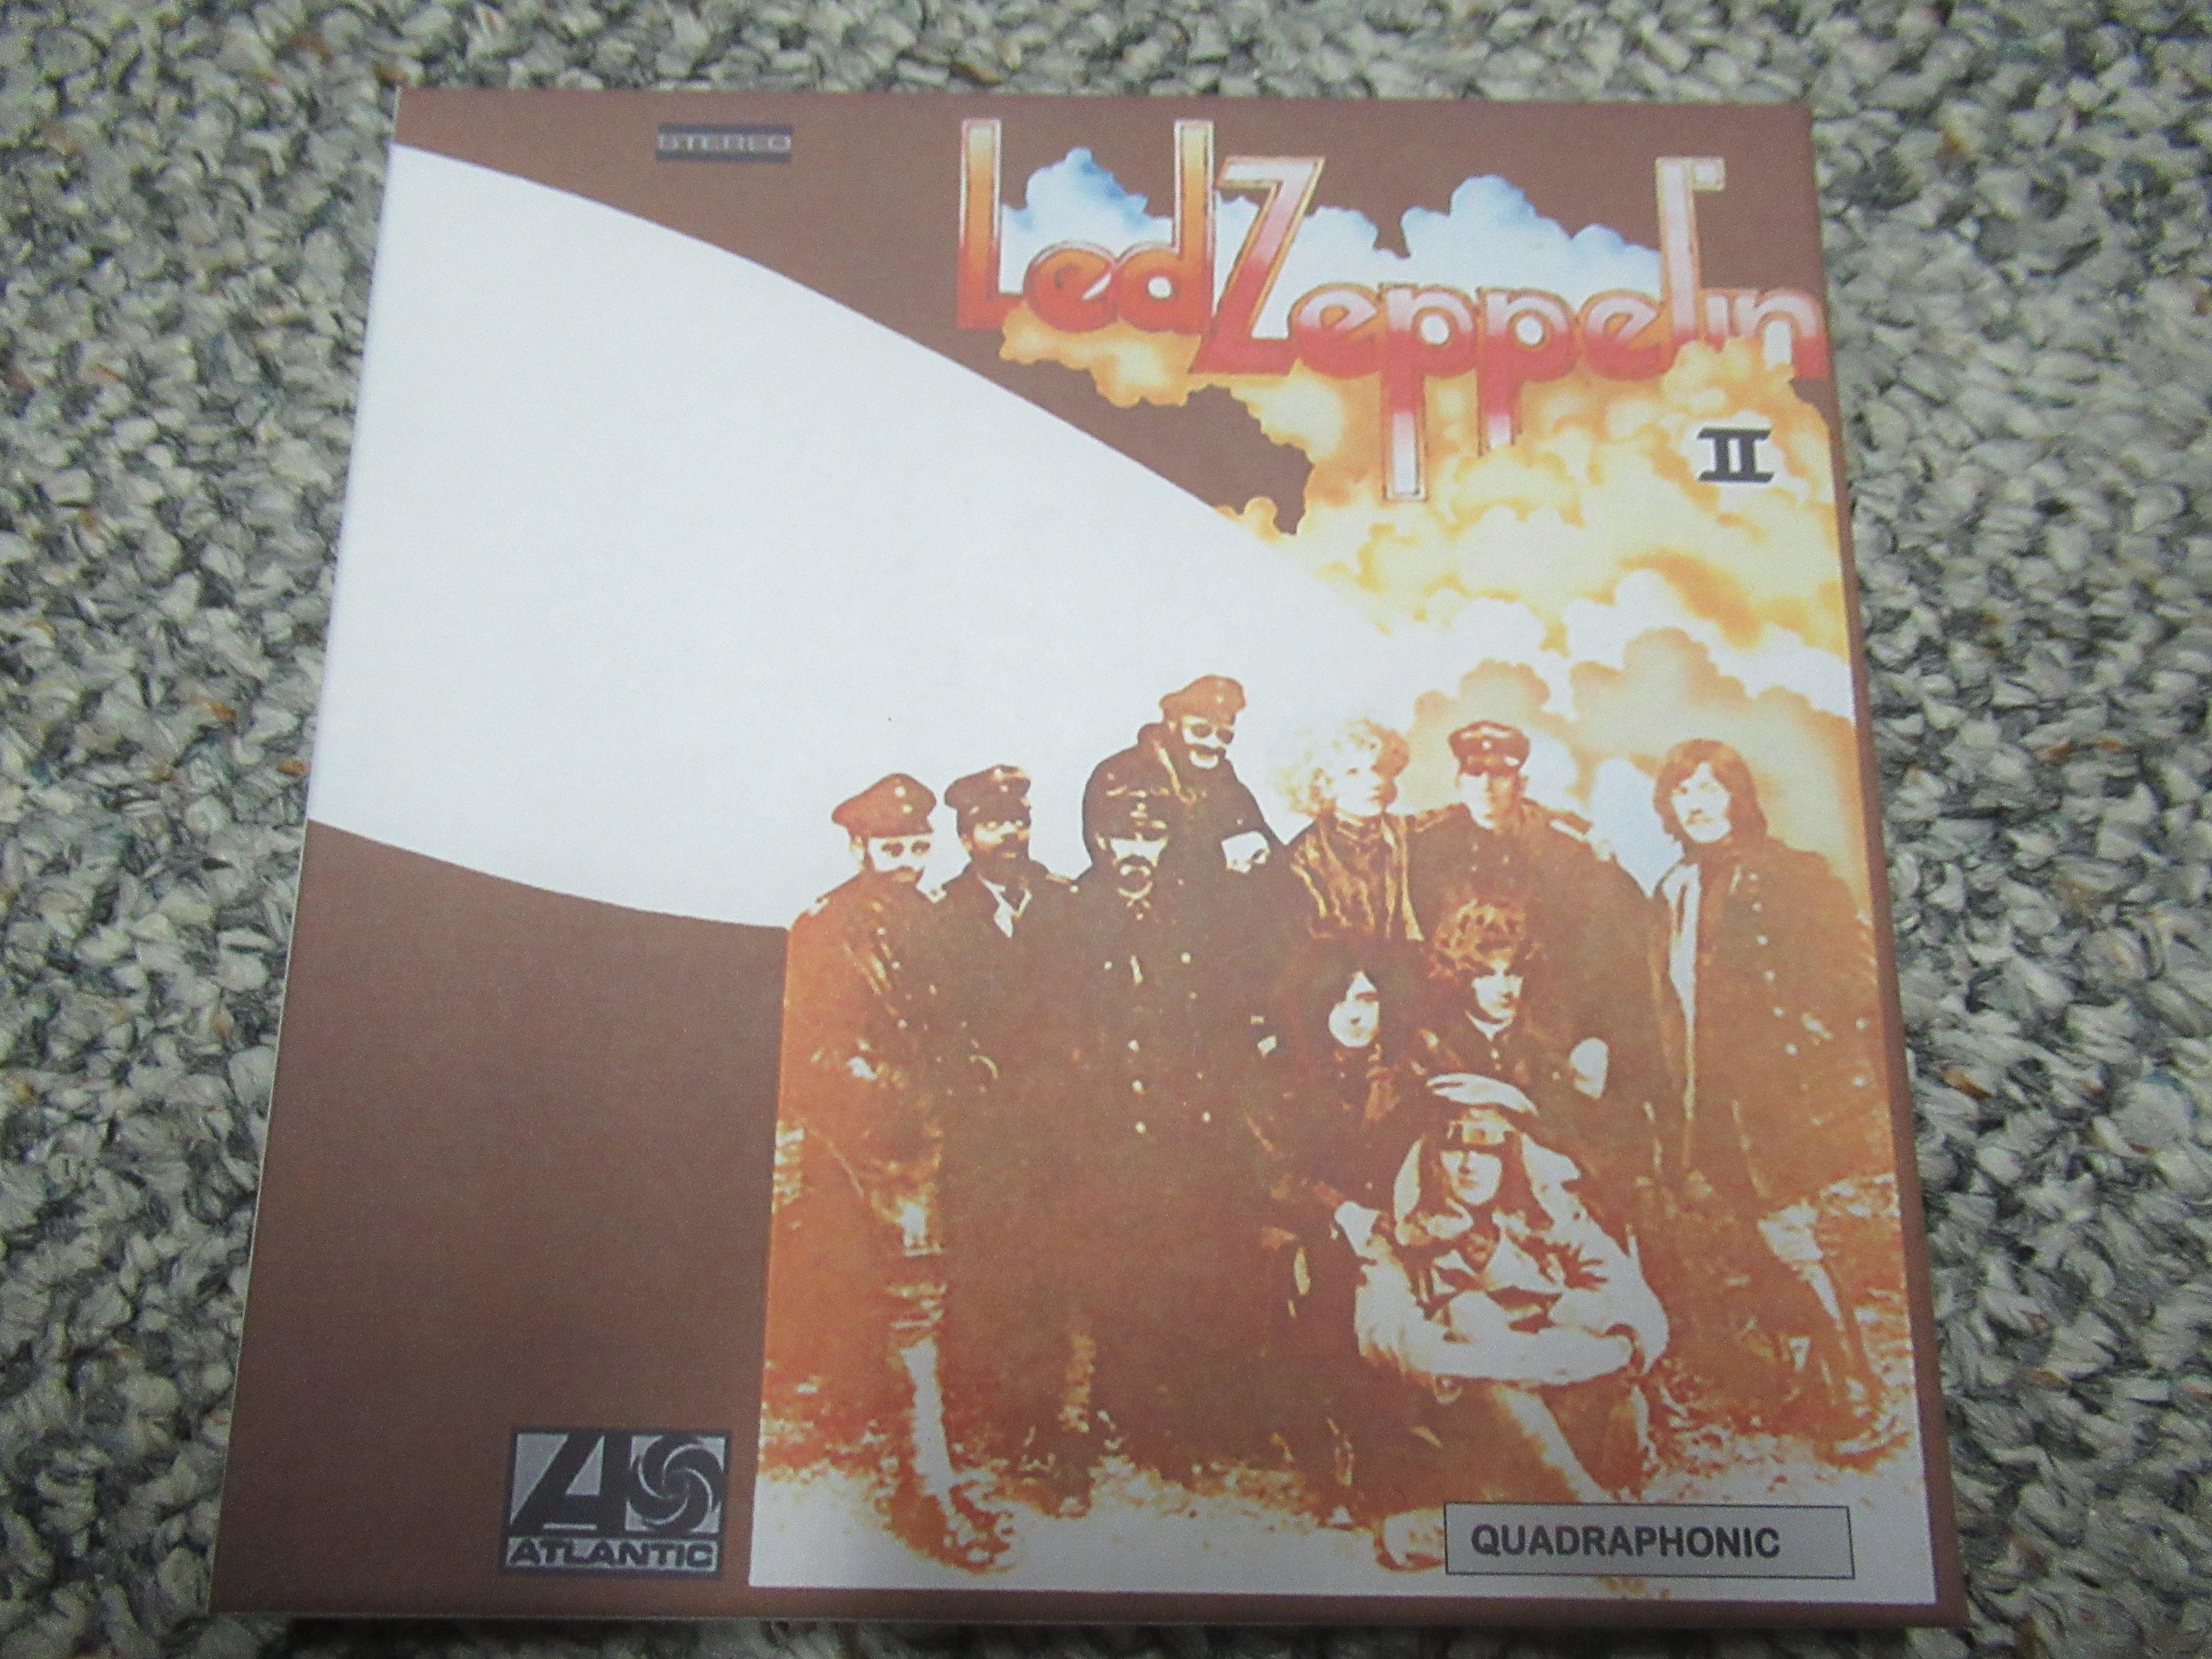 Led Zeppelin Led Zeppelin III 71/2IPS 4 Track Reel to Reel Tape -   Canada